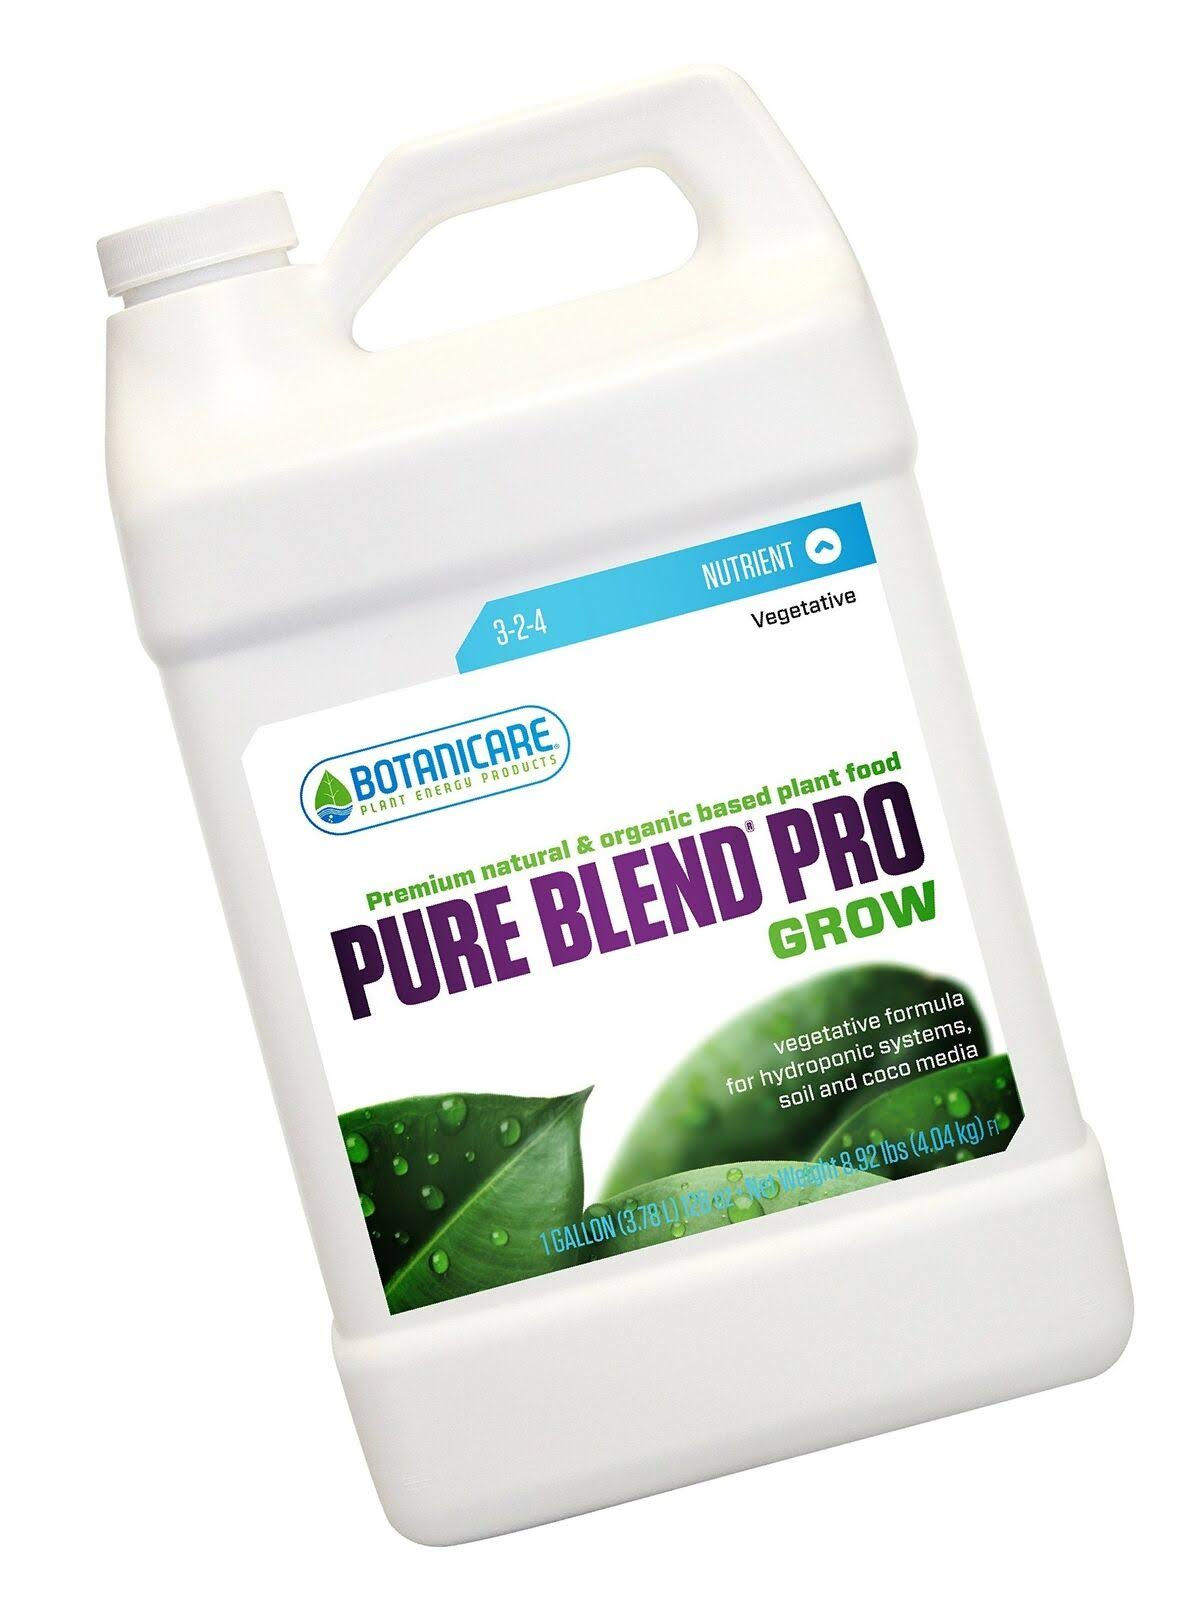 Botanicare Pure Blend Pro Grow Soil Nutrient 3-2-4 Formula - 1 Gal